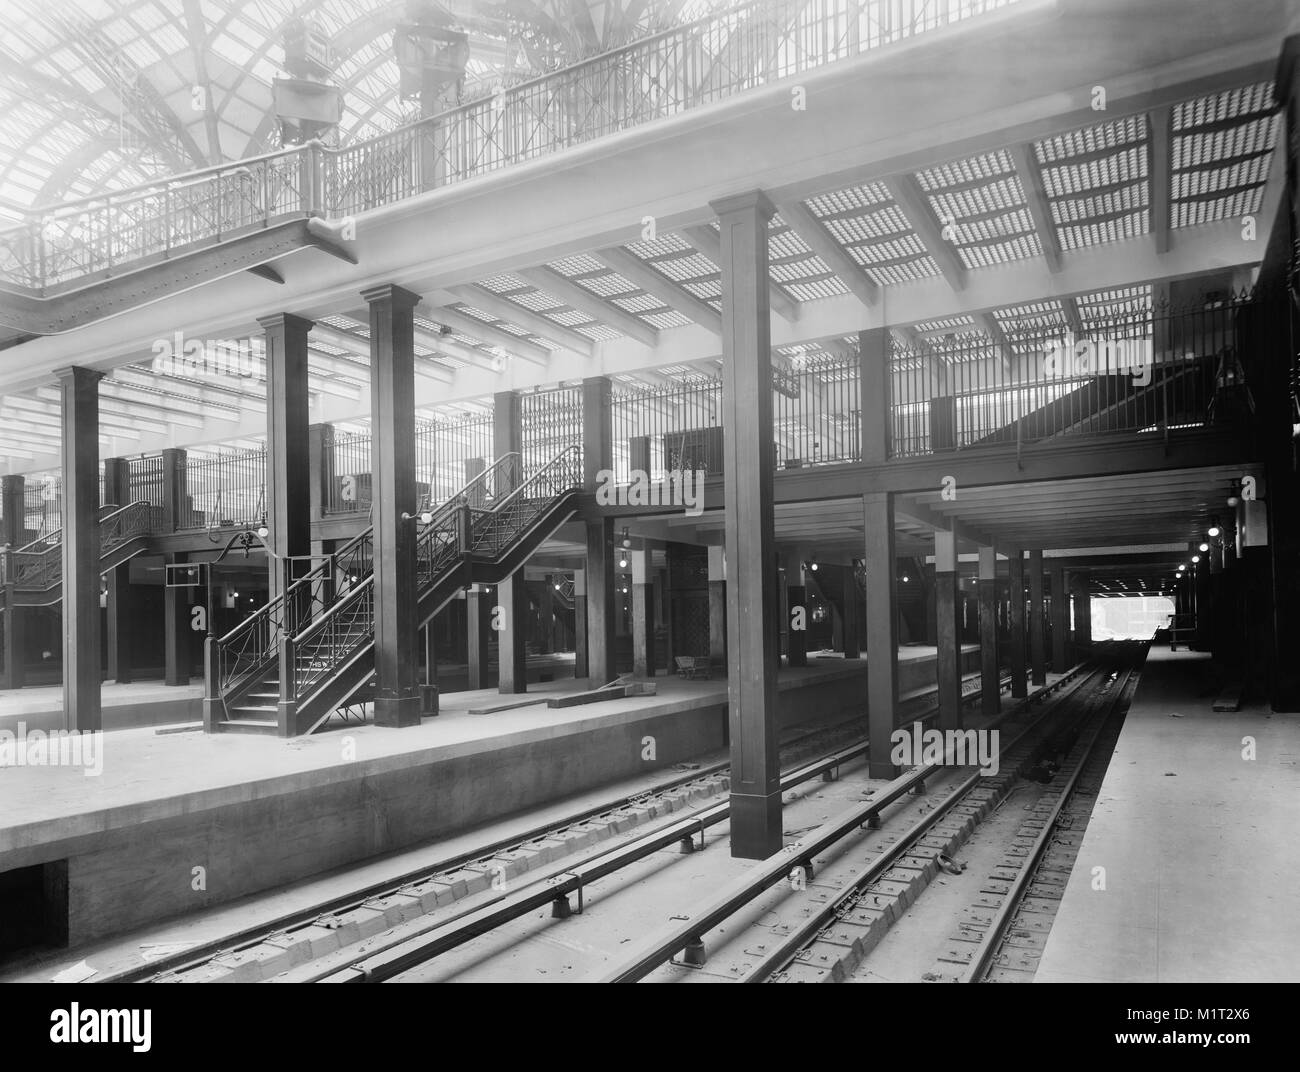 Livello di traccia che mostra le scale e ascensori, Pennsylvania Station, New York New York, Stati Uniti d'America, Detroit Publishing Company, 1910 Foto Stock